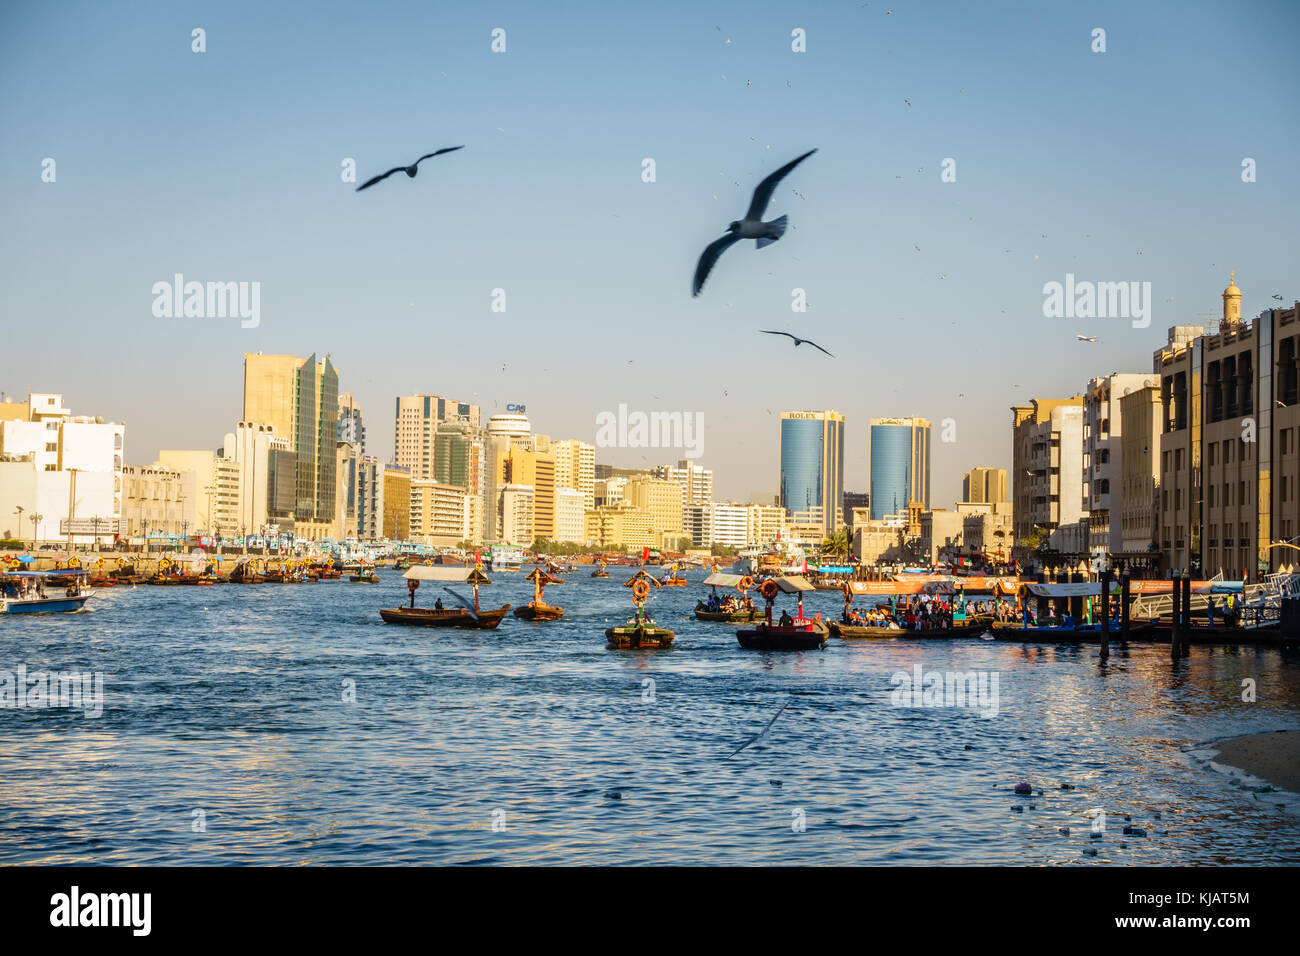 Dubai, VAE, 5. Februar 2016: abras Überführung von Touristen und Einheimischen in Dubai Creek Stockfoto